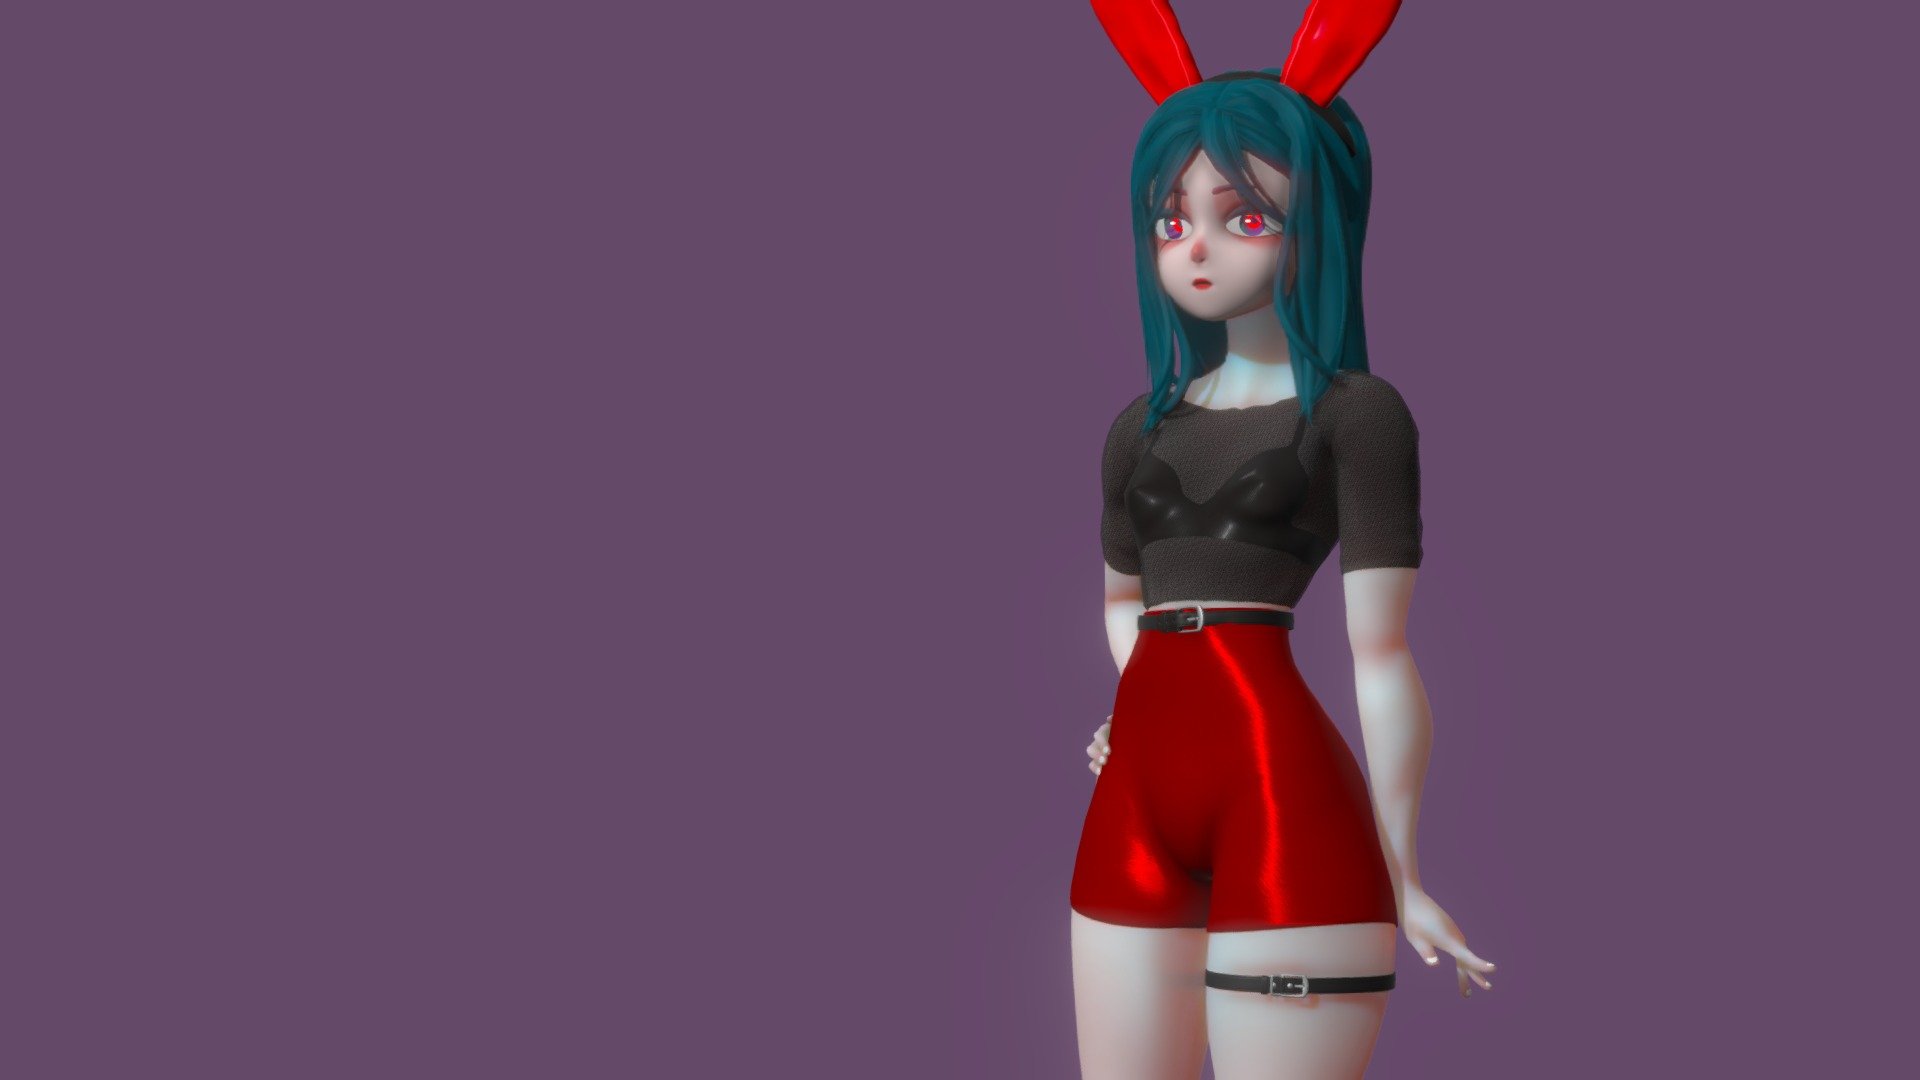 bunny girl - bunny girl - 3D model by JiHoBoBN (@bbbjihwan) 3d model